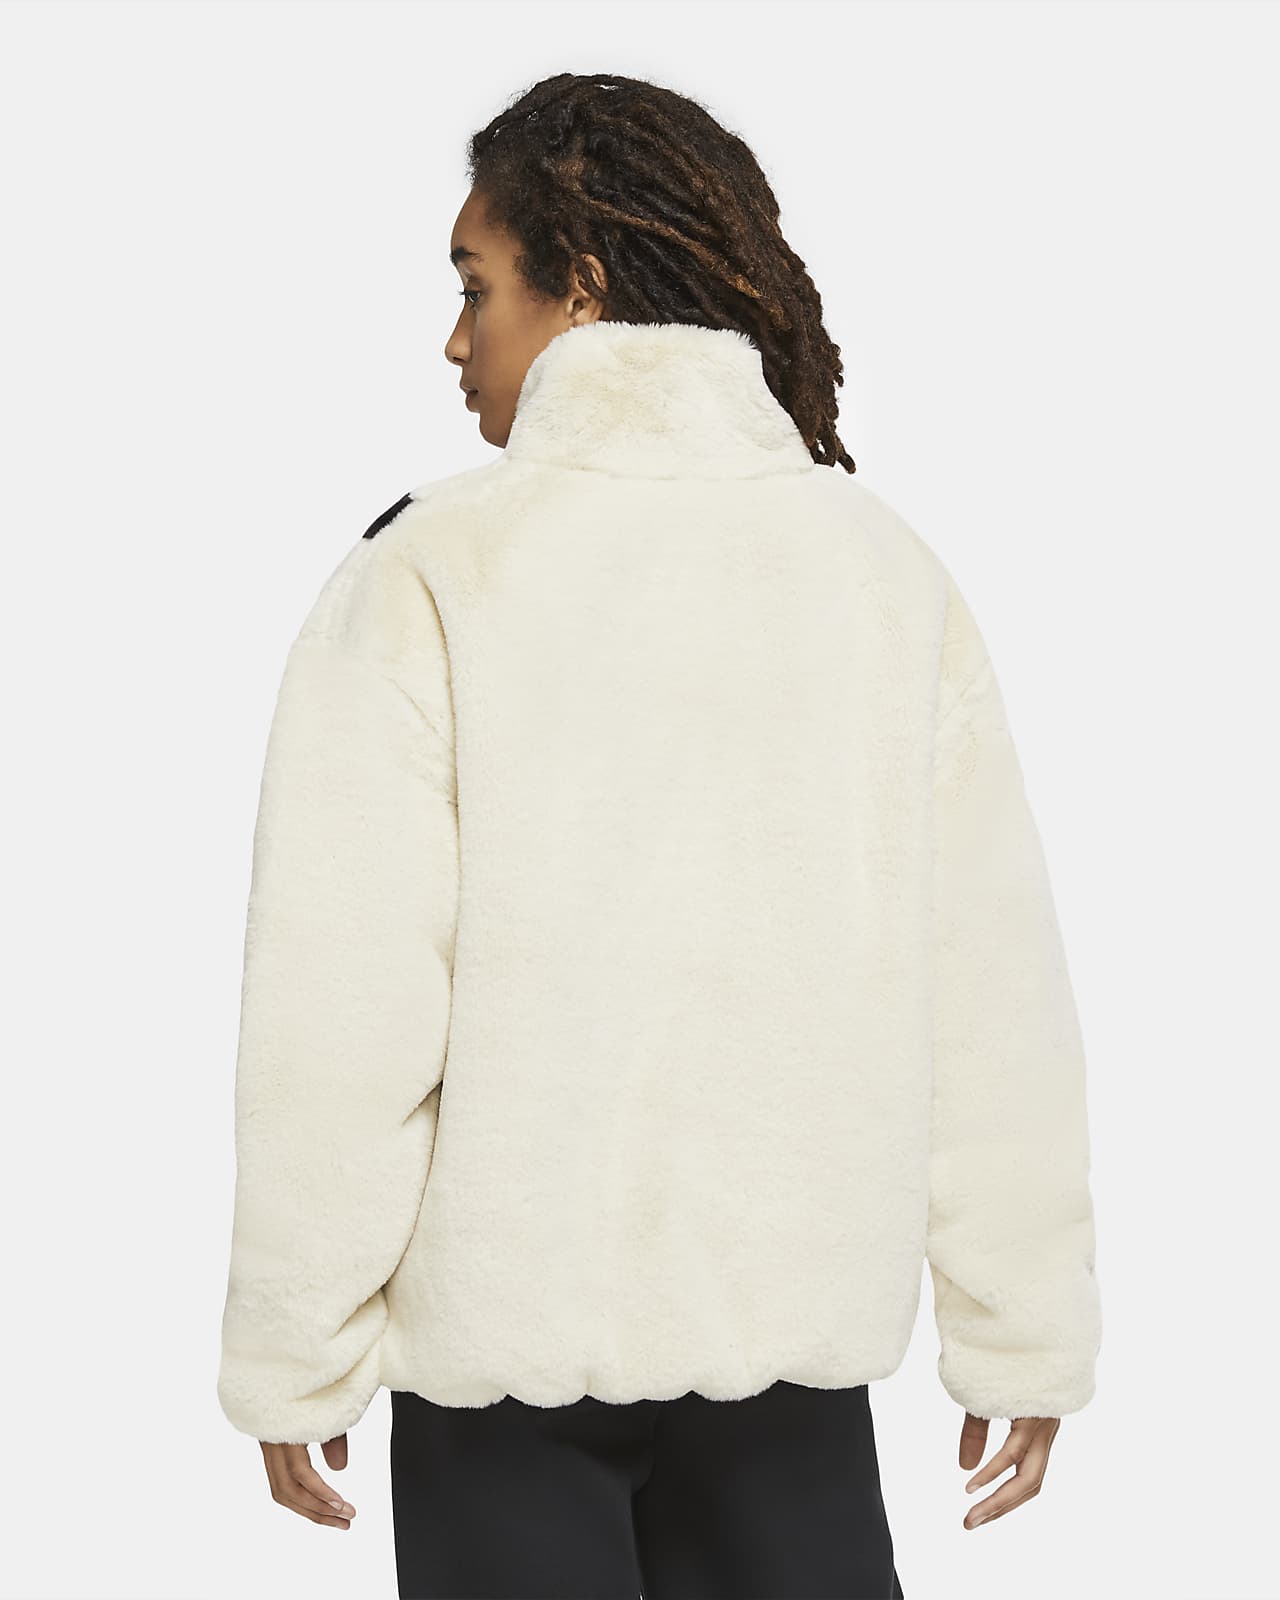 white nike fur jacket